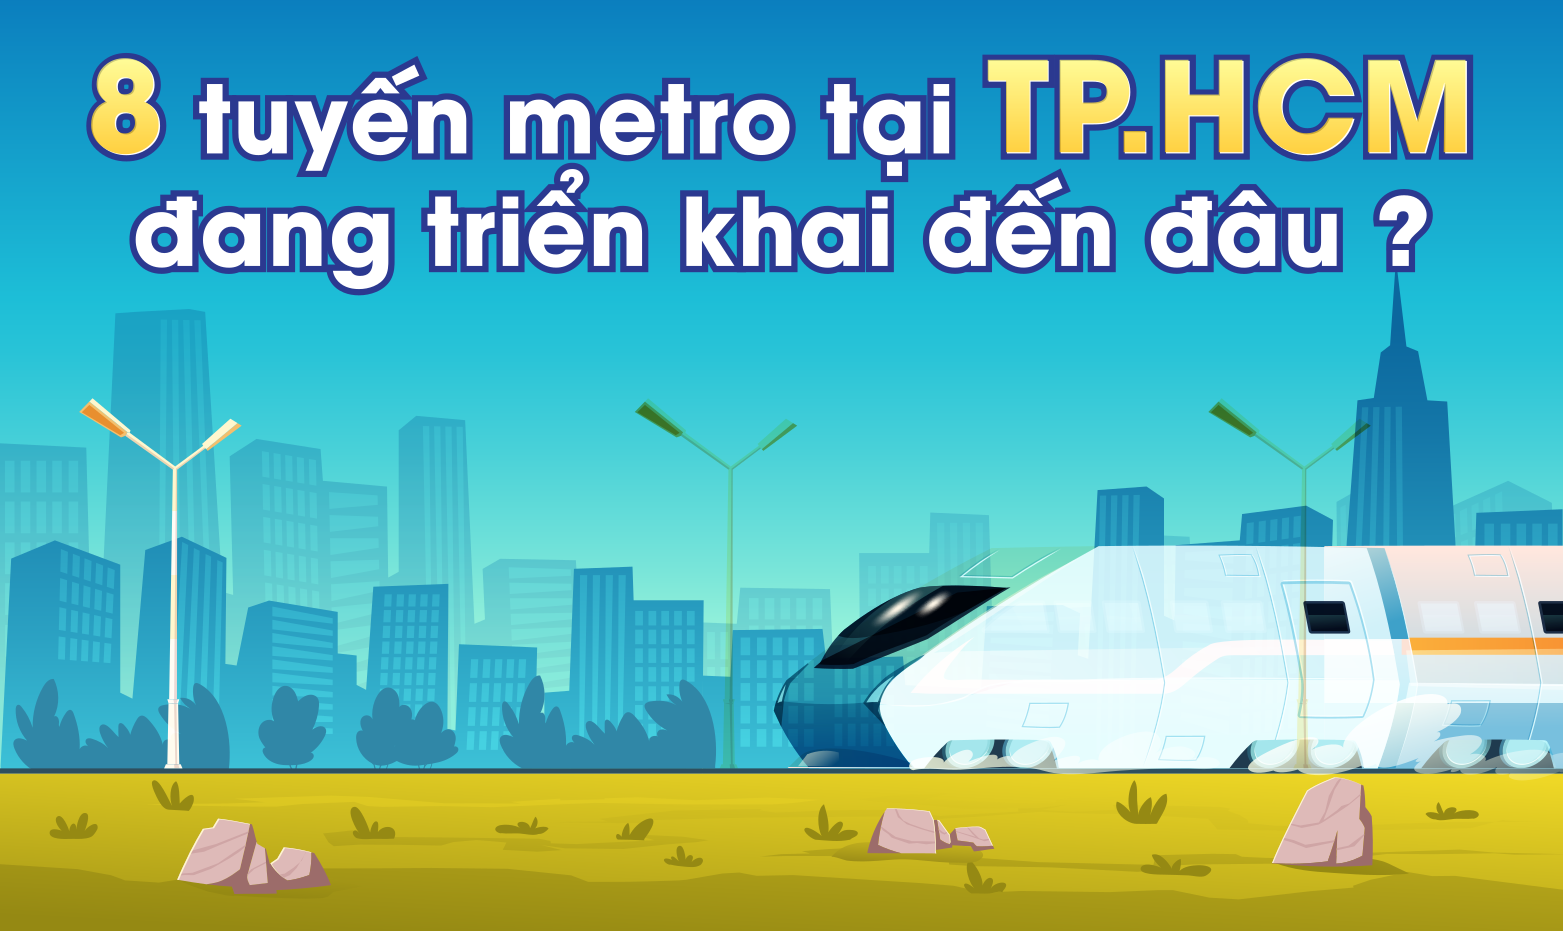 8 tuyến metro tại TP.HCM đang triển khai đến đâu?